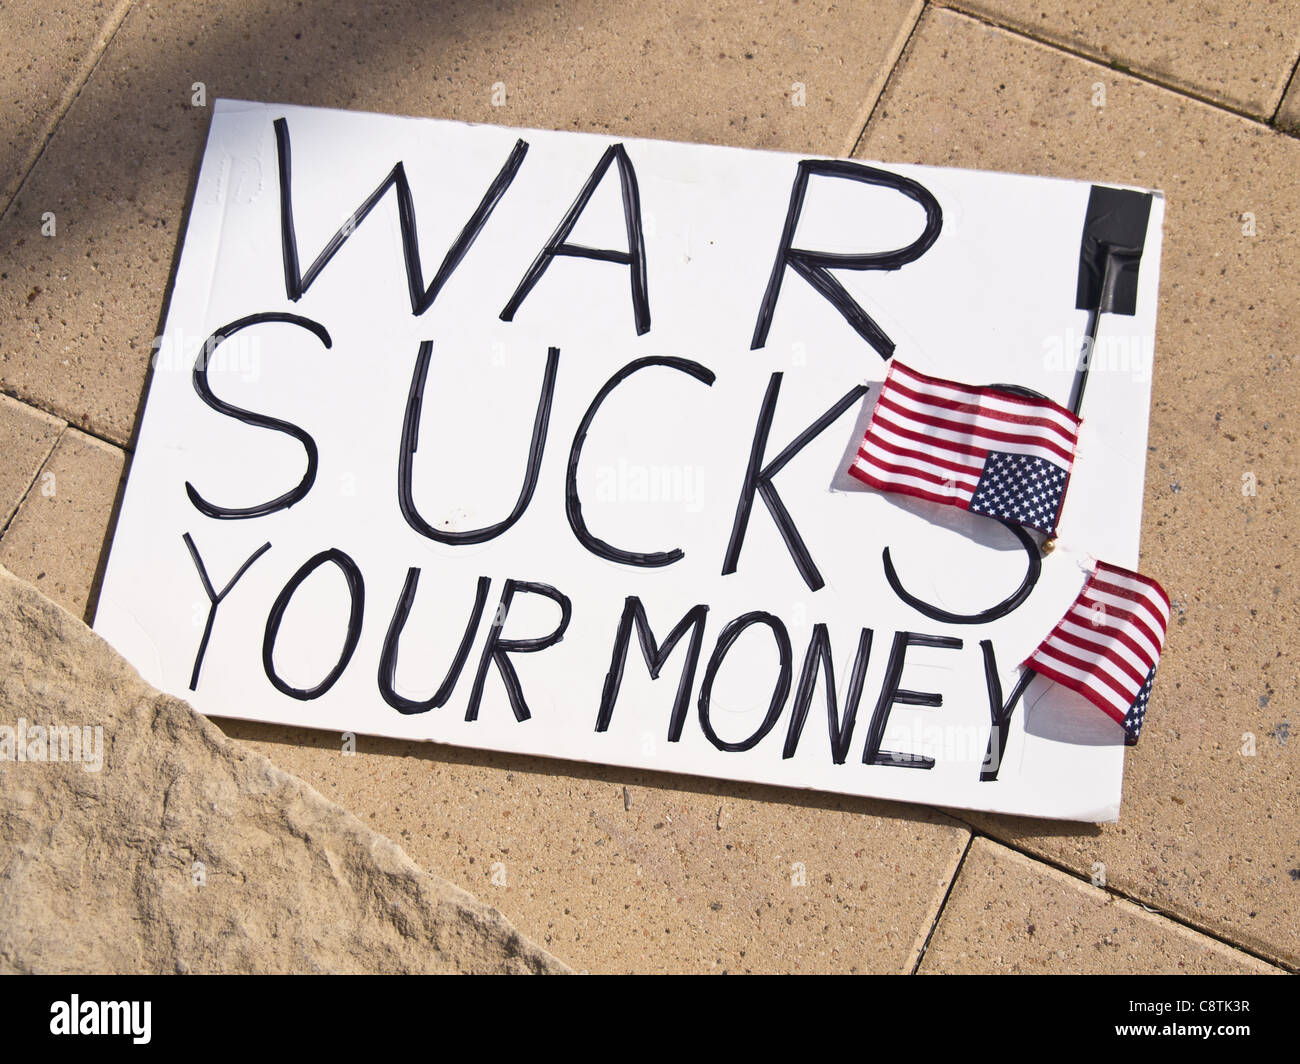 La guerra aspira il vostro denaro - un segno di protesta a occupare Austin, una propaggine di occupare Wall Street circolazione Foto Stock